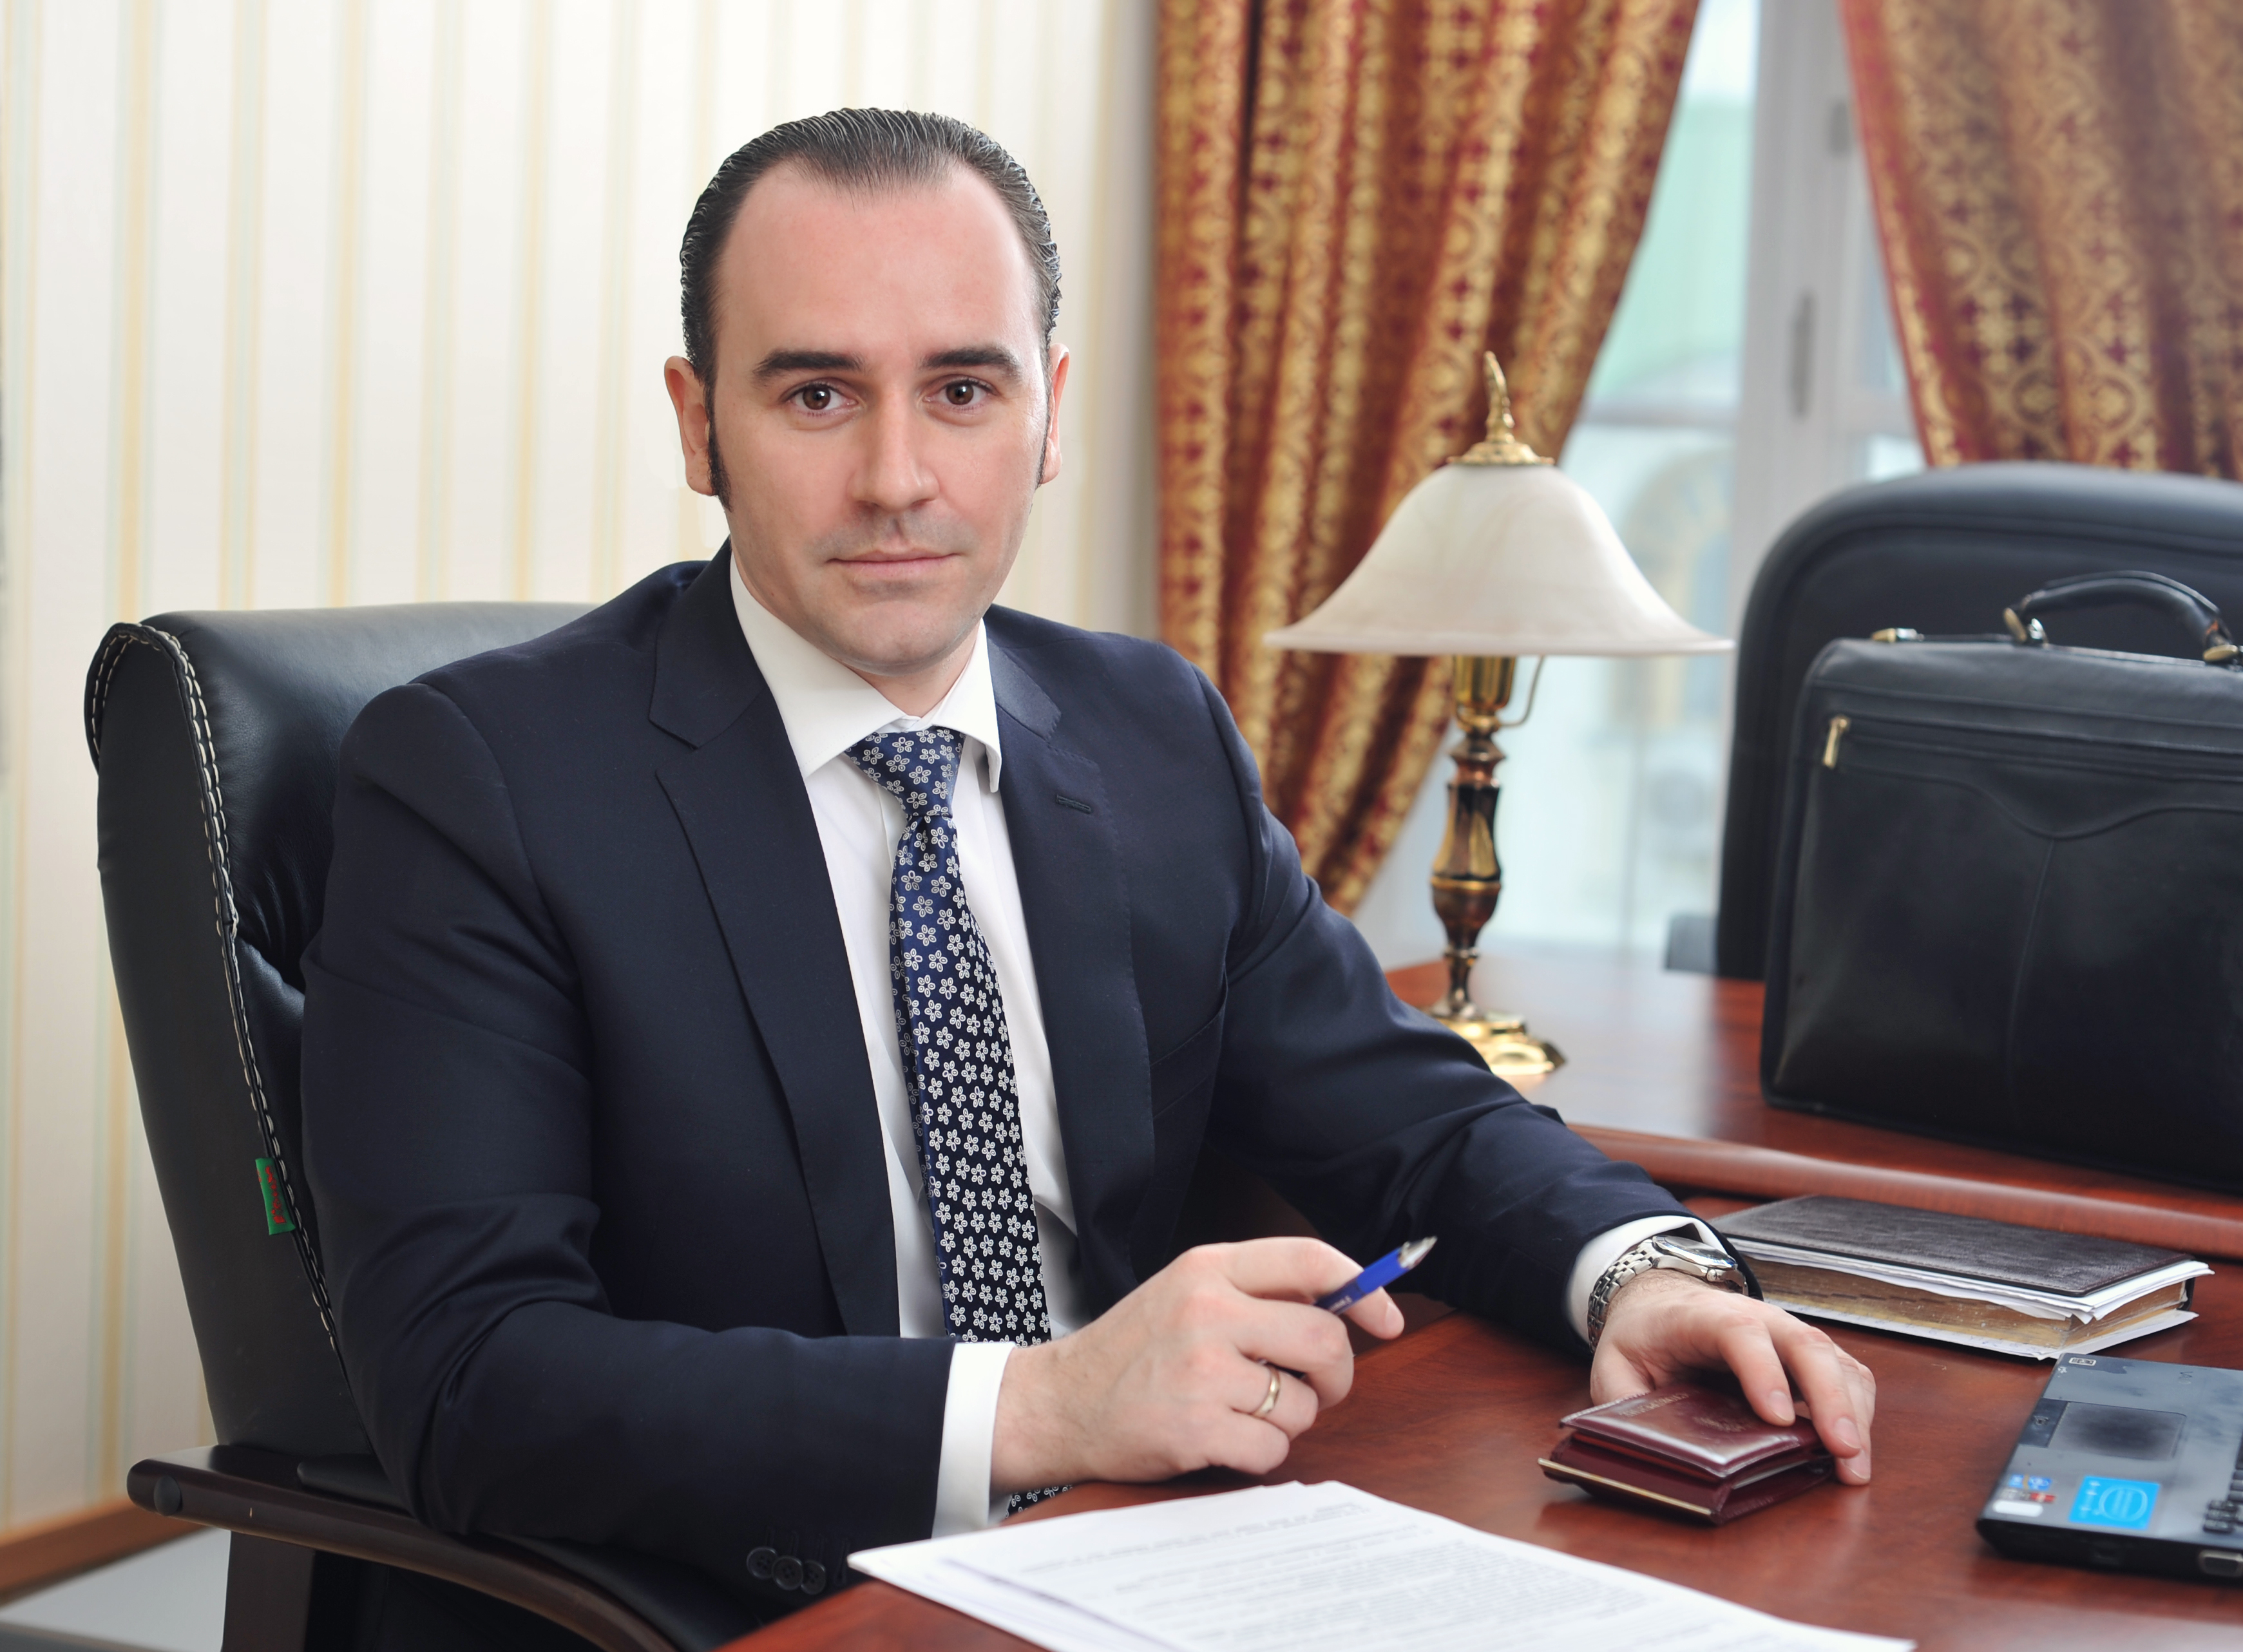 Адвокат Комаров Сергей Владимирович